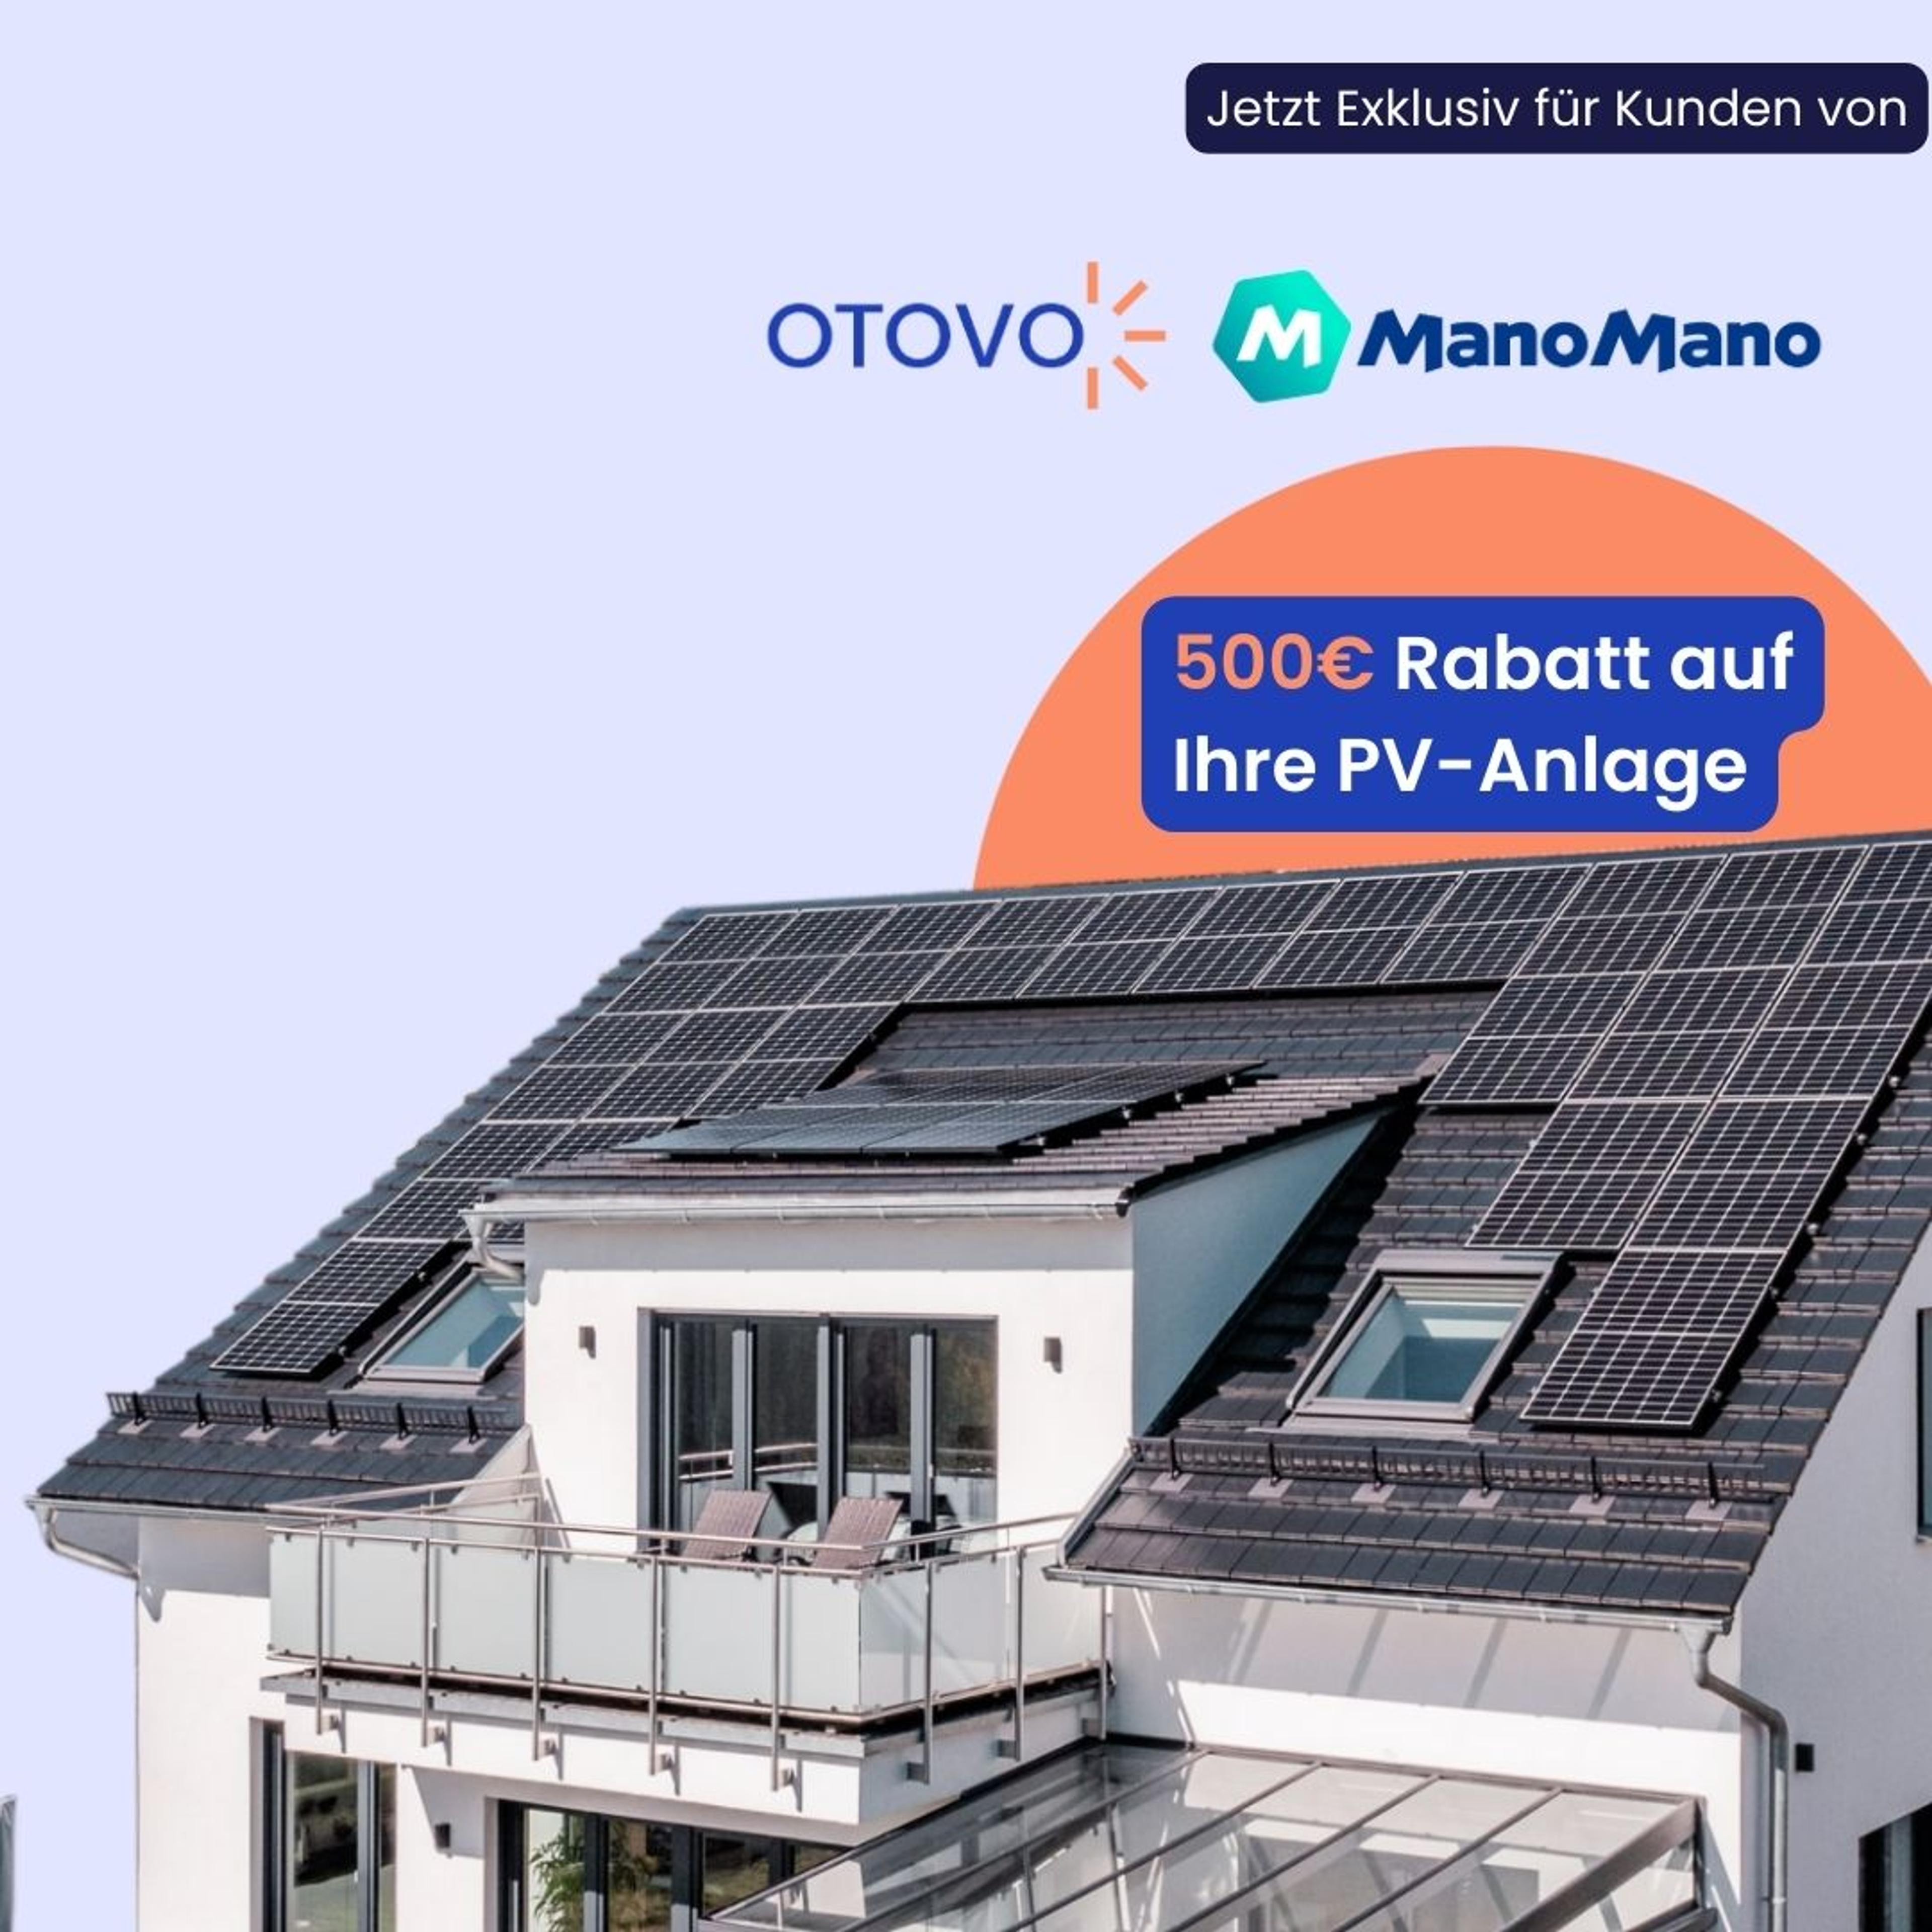 Solaranlage auf Dach mit 500€ Rabatt